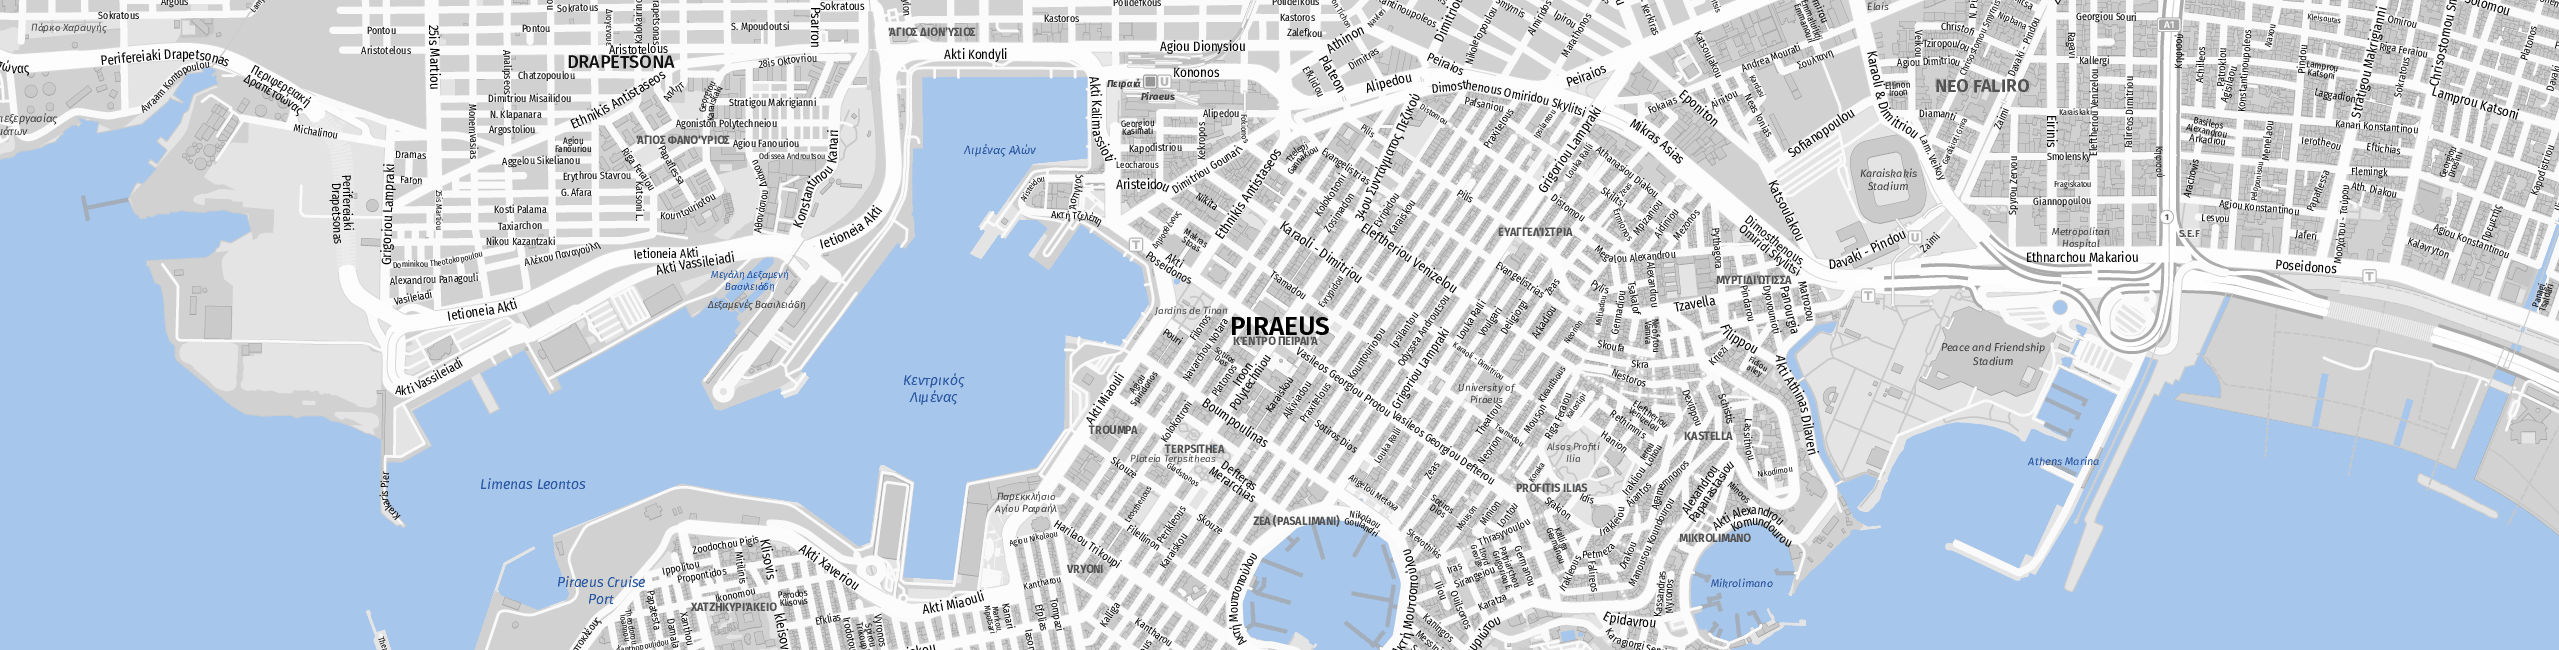 Stadtplan Piraeus zum Downloaden.